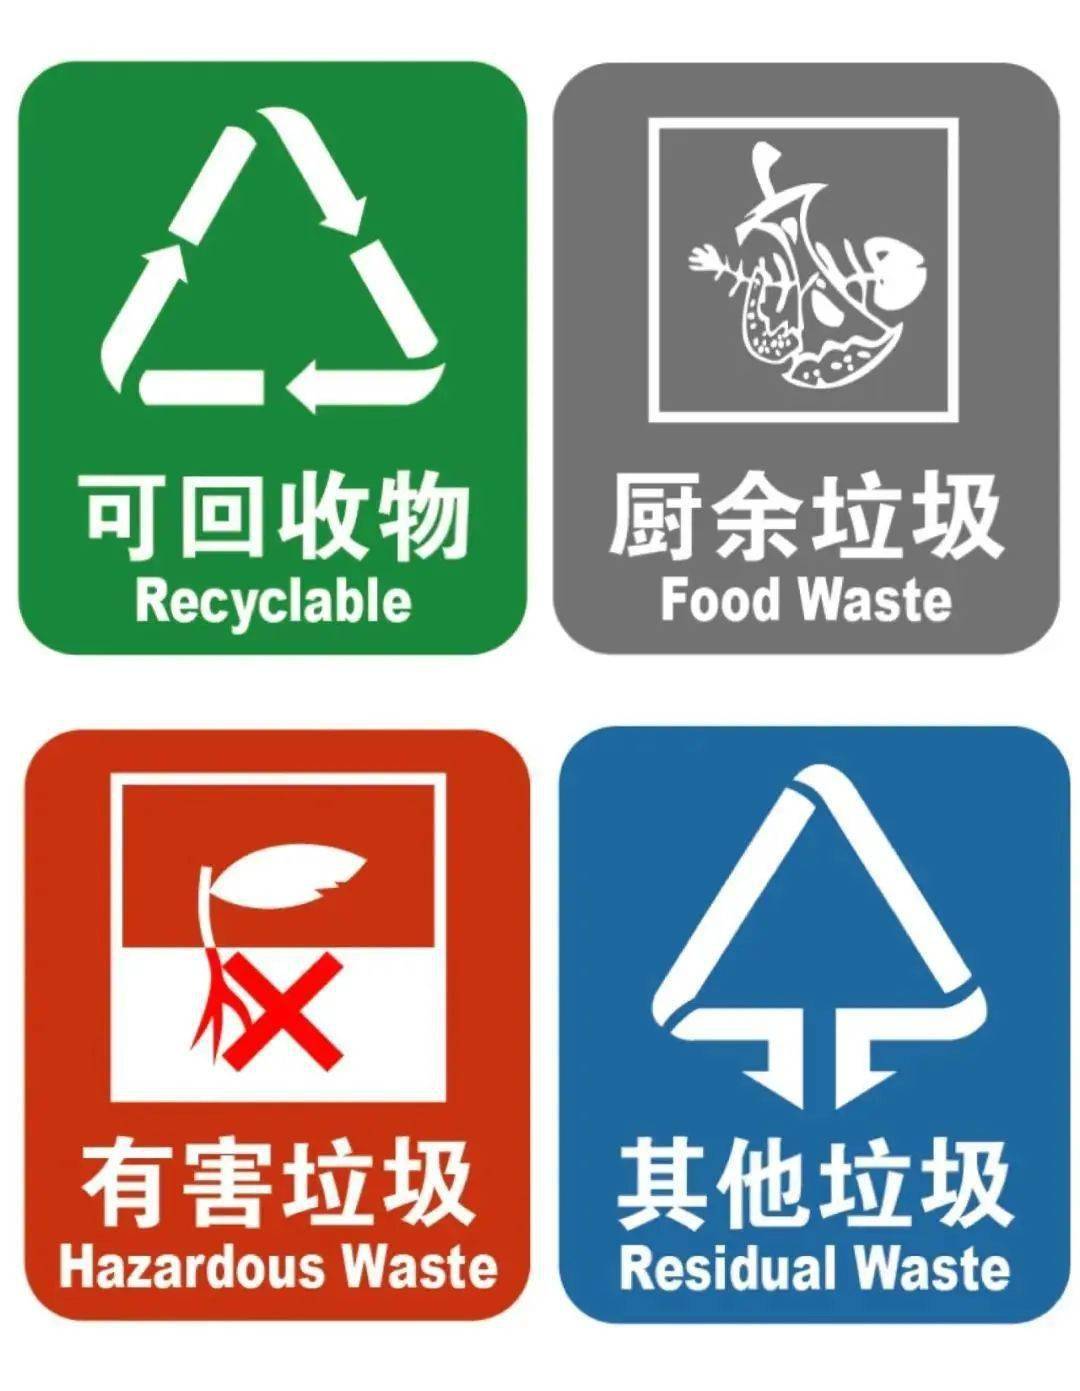 生活垃圾一般按照可回收物,有害垃圾,厨余垃圾,其它垃圾进行"四分类".